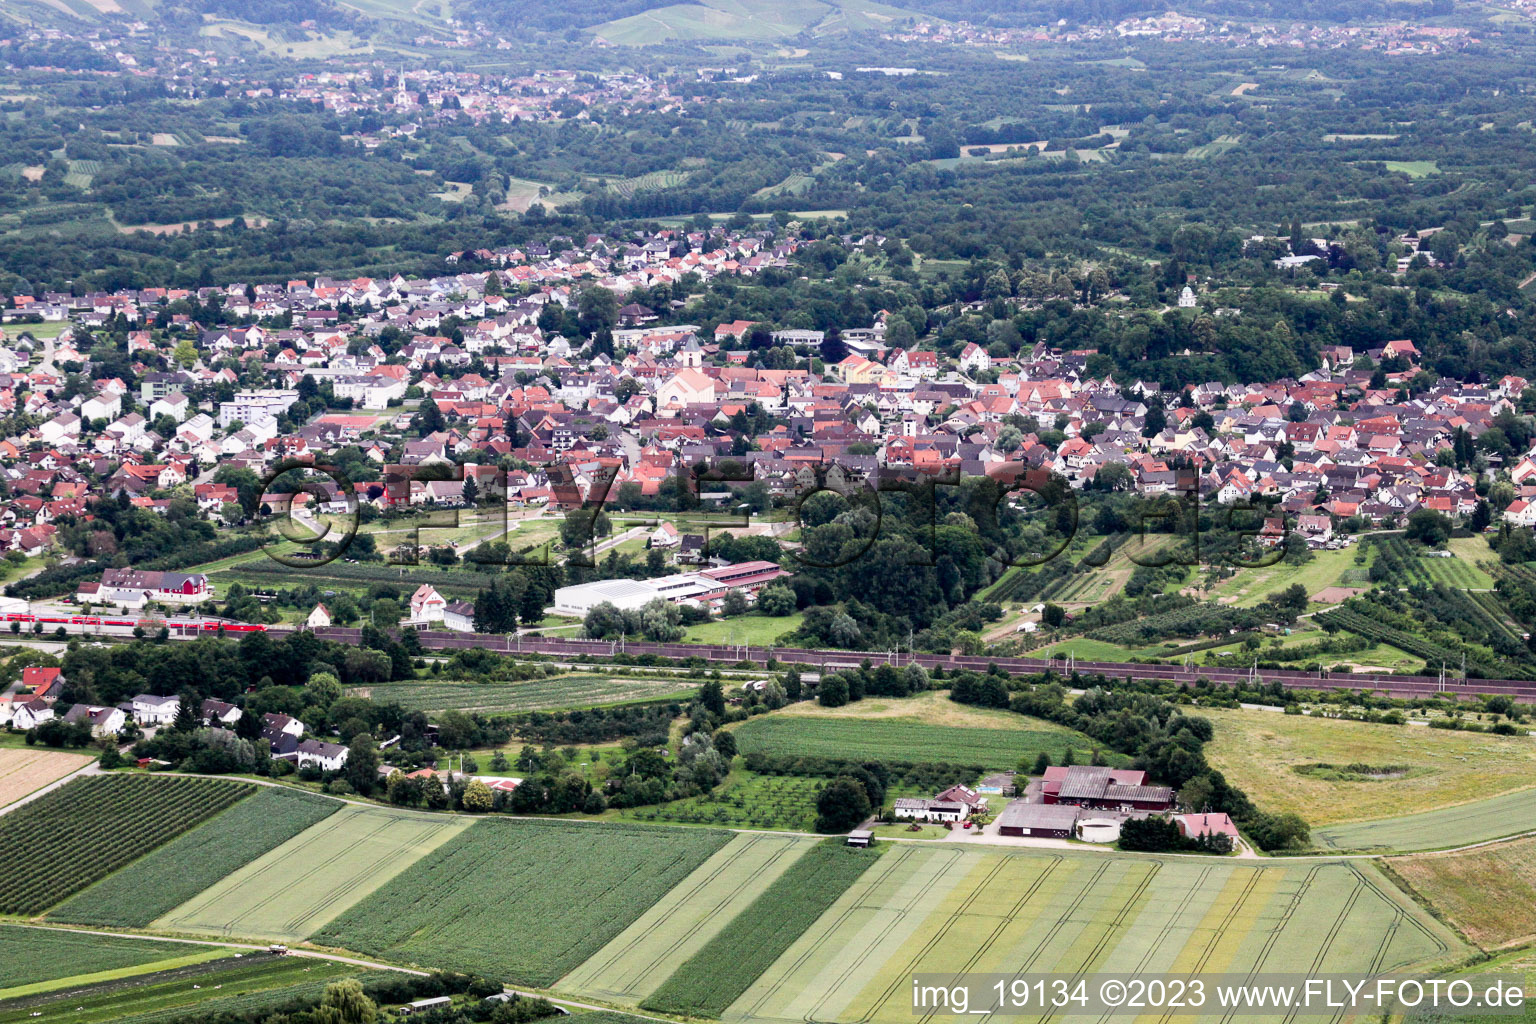 Renchen im Bundesland Baden-Württemberg, Deutschland aus der Luft betrachtet